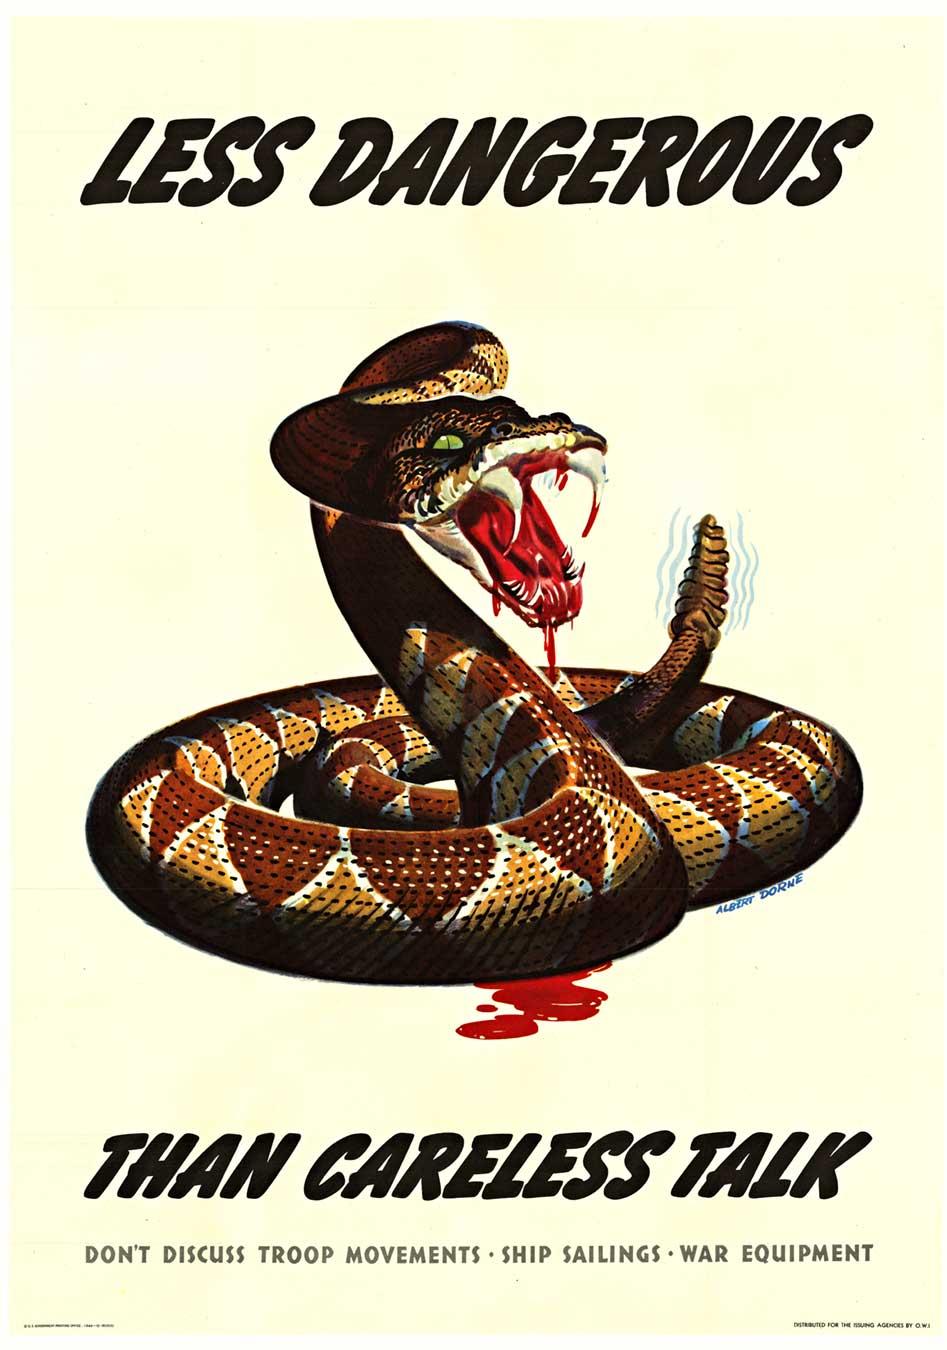 Print Albert Dorne - Affiche originale de la Seconde Guerre mondiale "Less Dangerous than Careless Talk" (Moins dangereux qu'une parole imprudente)